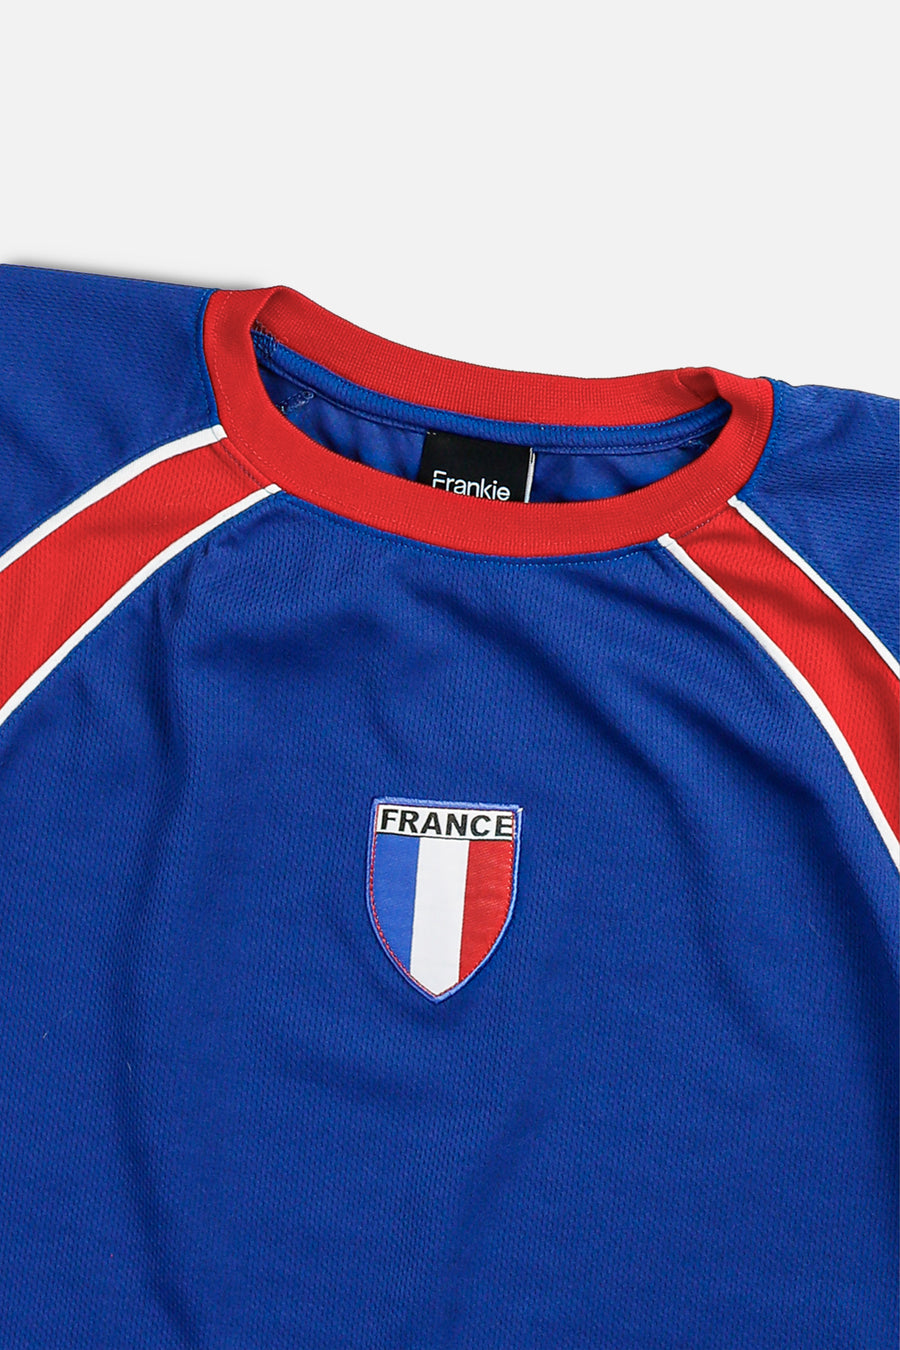 Rework Crop France Soccer Jersey - XL